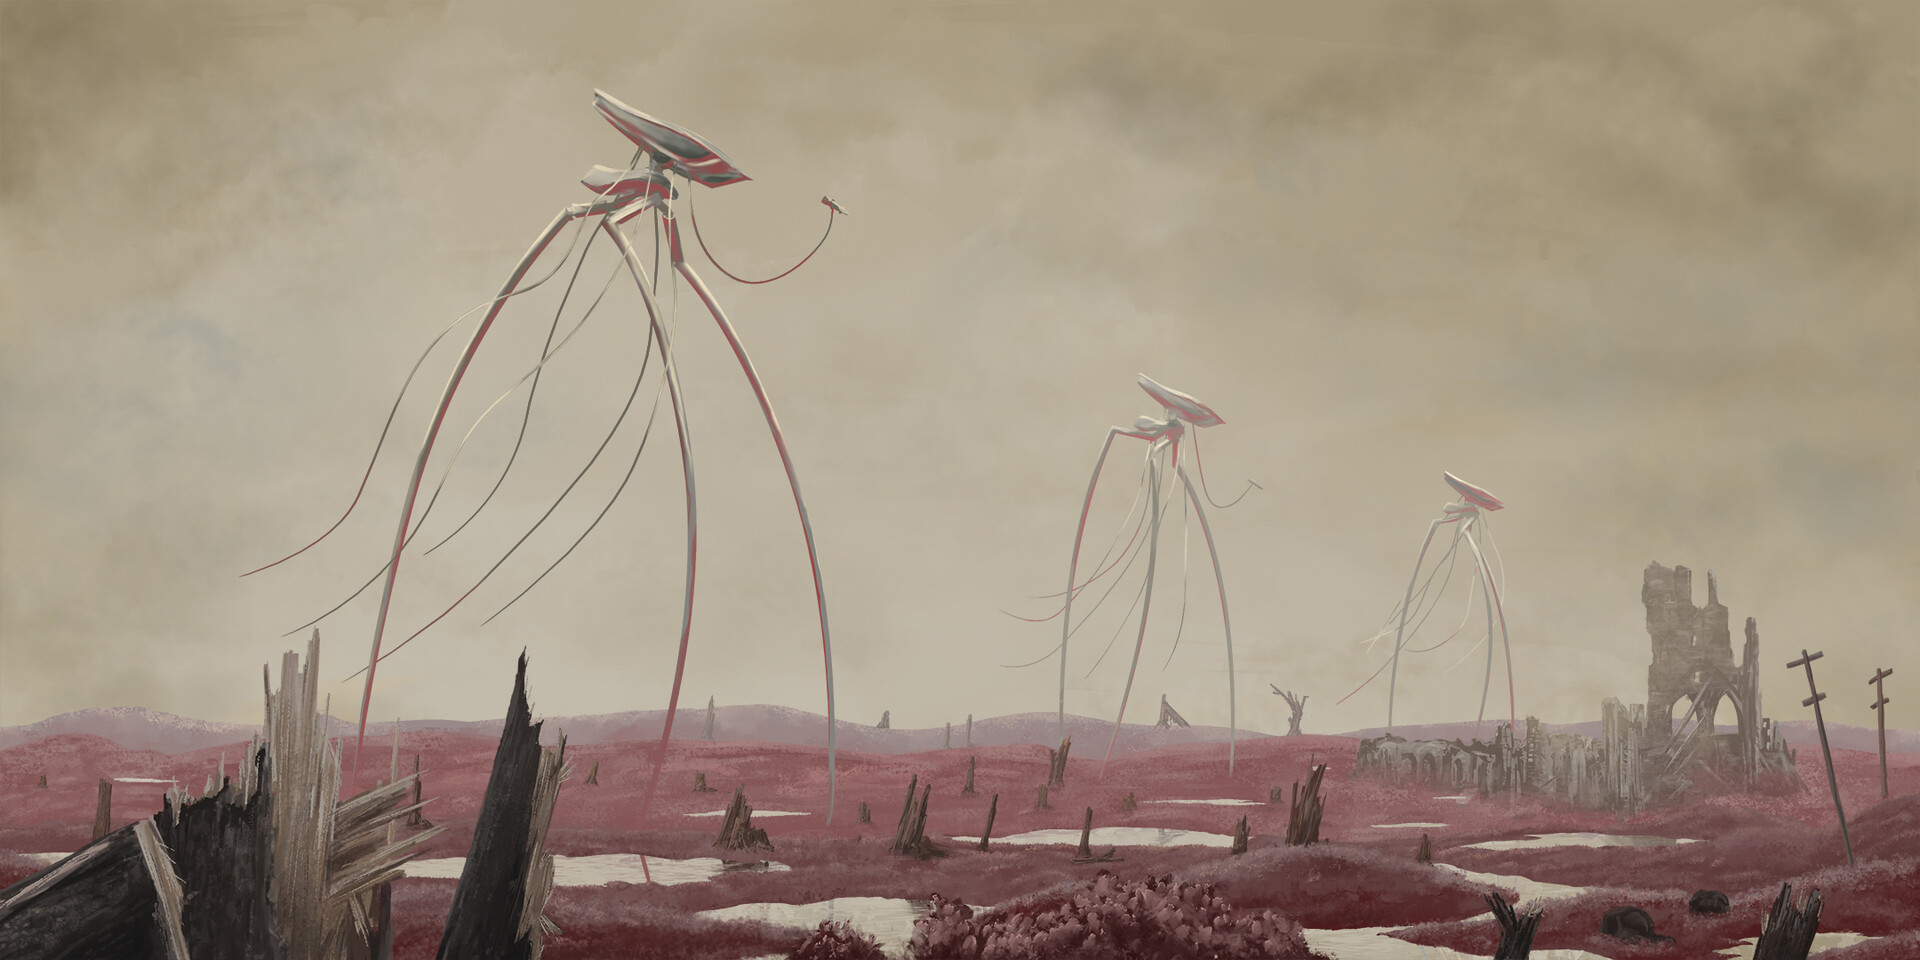 war of the worlds alien ship